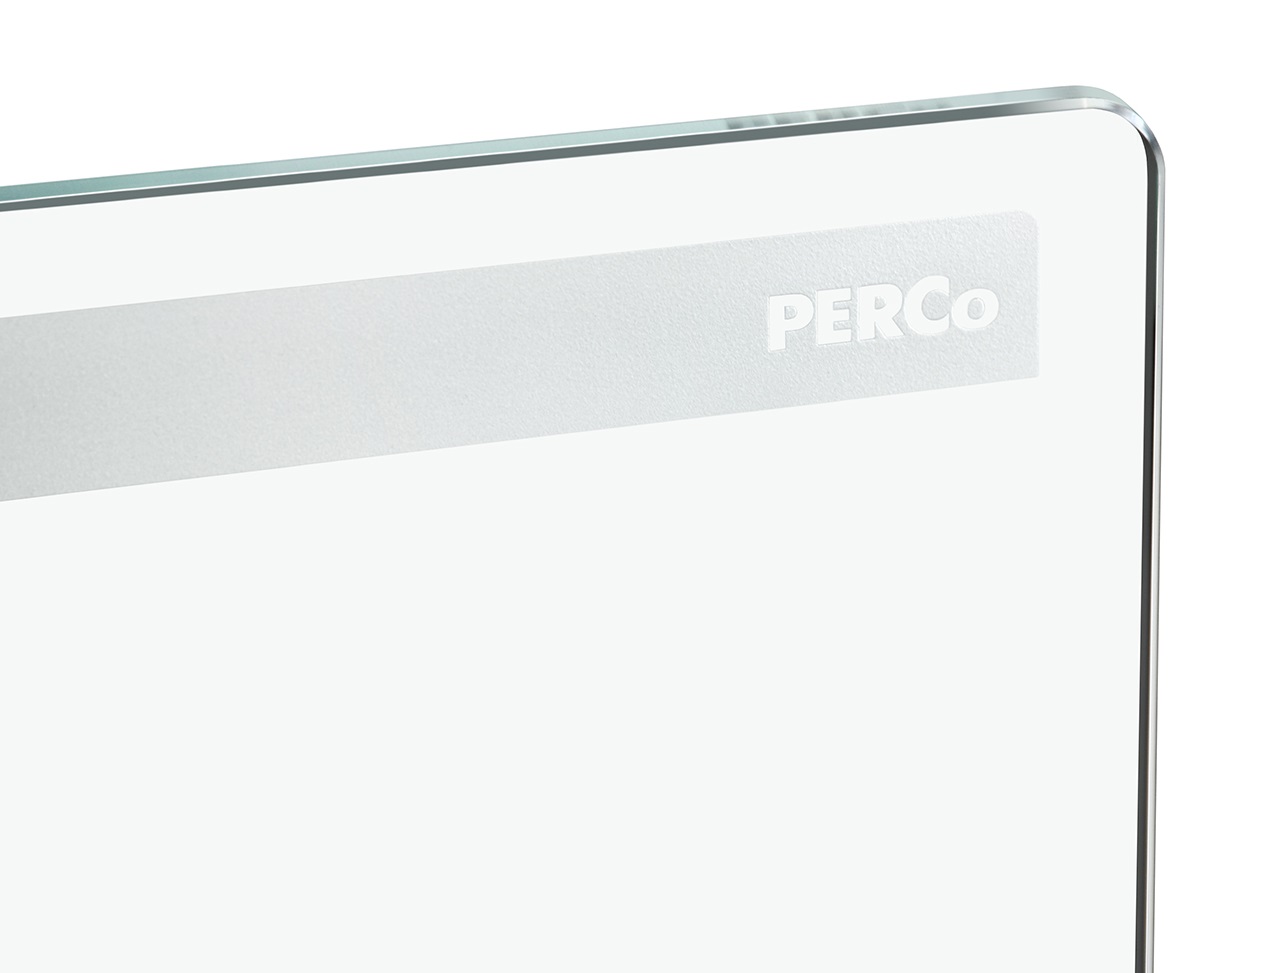 Створка длиной 900 мм для стойки калитки PERCo-WMD-06, закаленное стекло